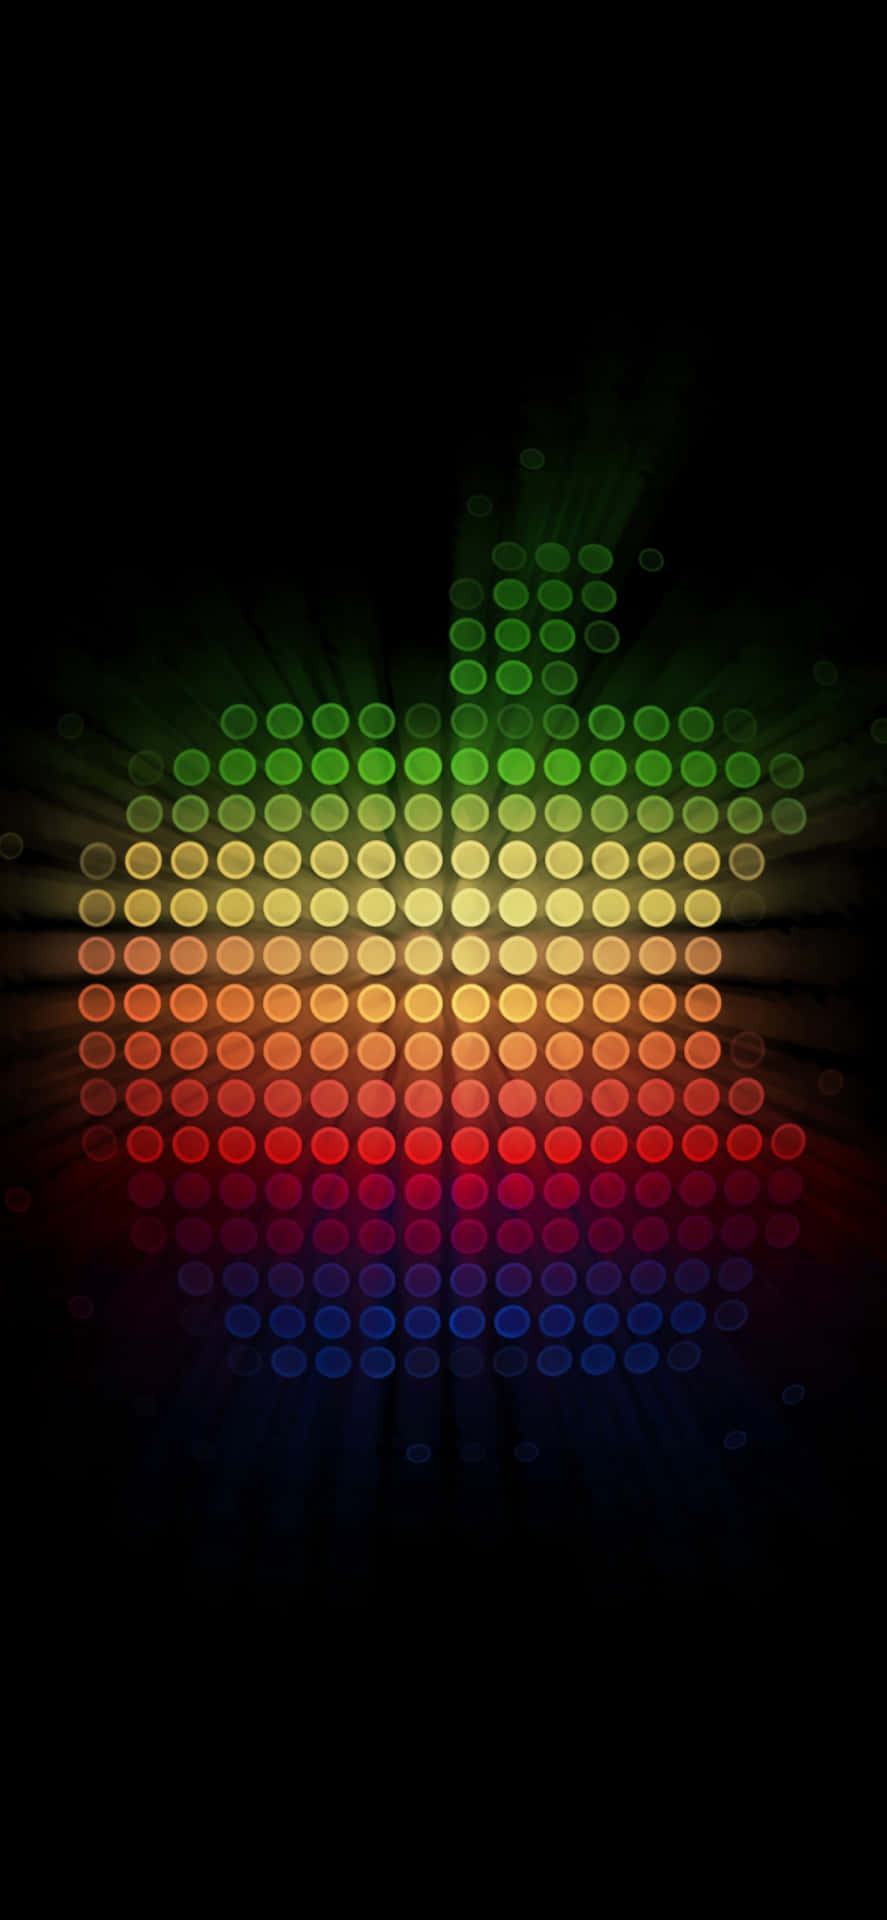 Inspiraciónretro: Clásico Logo De Apple. Fondo de pantalla